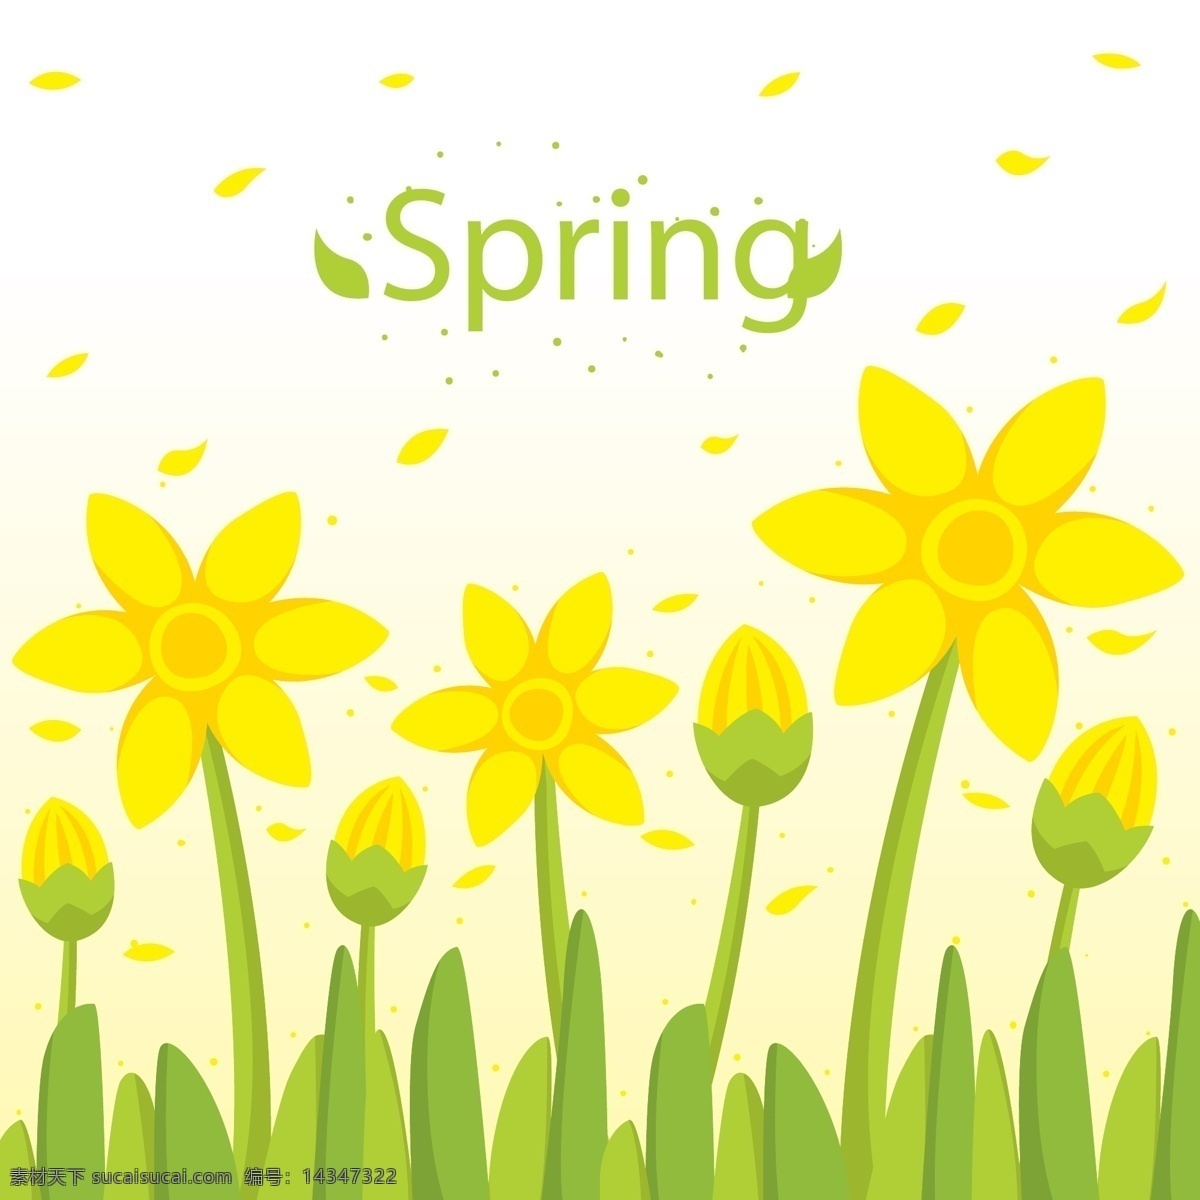 春季 黄色 花丛 花瓣 矢量 花朵 植物 花瓣矢量图 动漫动画 风景漫画